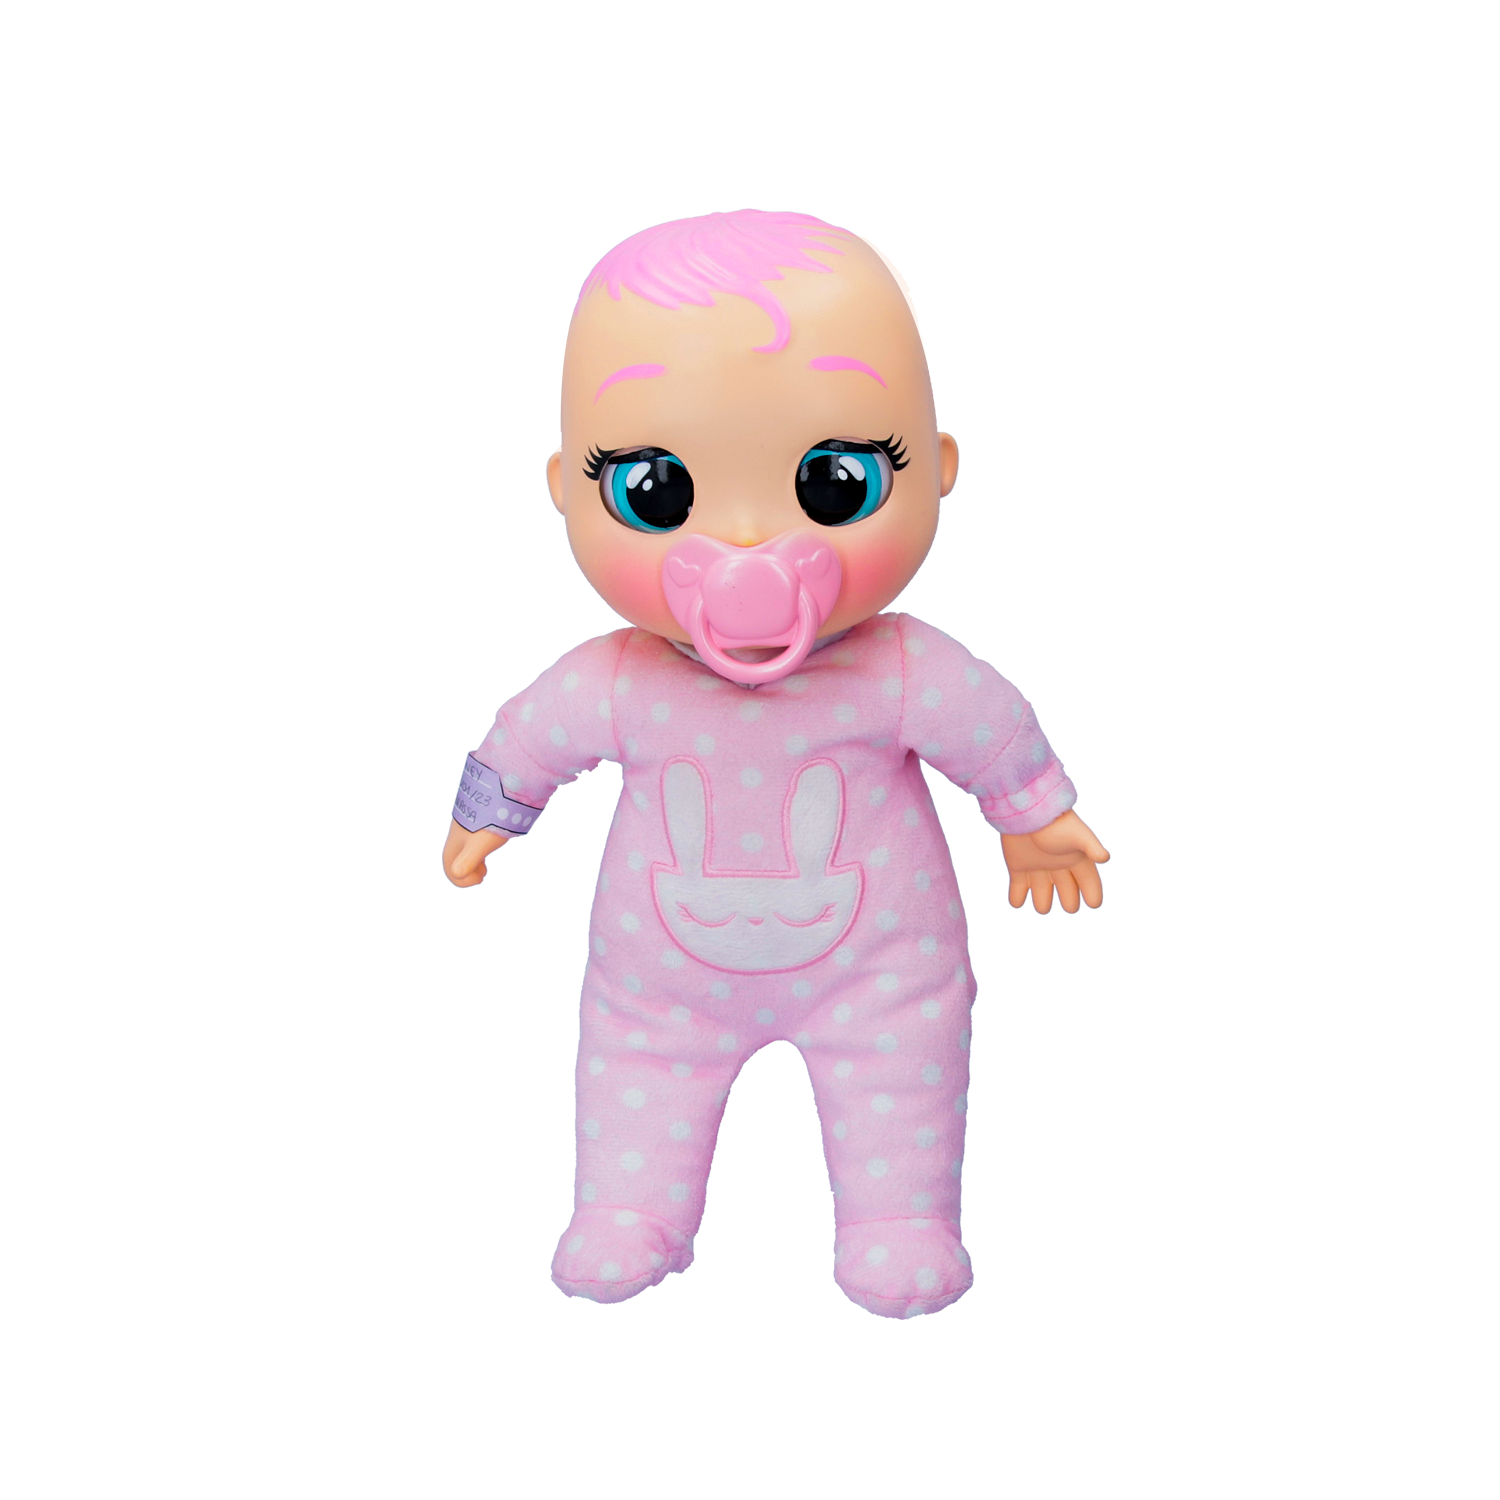 Cry babies newborn coney, bambola interattiva di una vera neonata, mangia, piange e si calma e ride solo con te, grazie al braccialetto elettronico - CRY BABIES